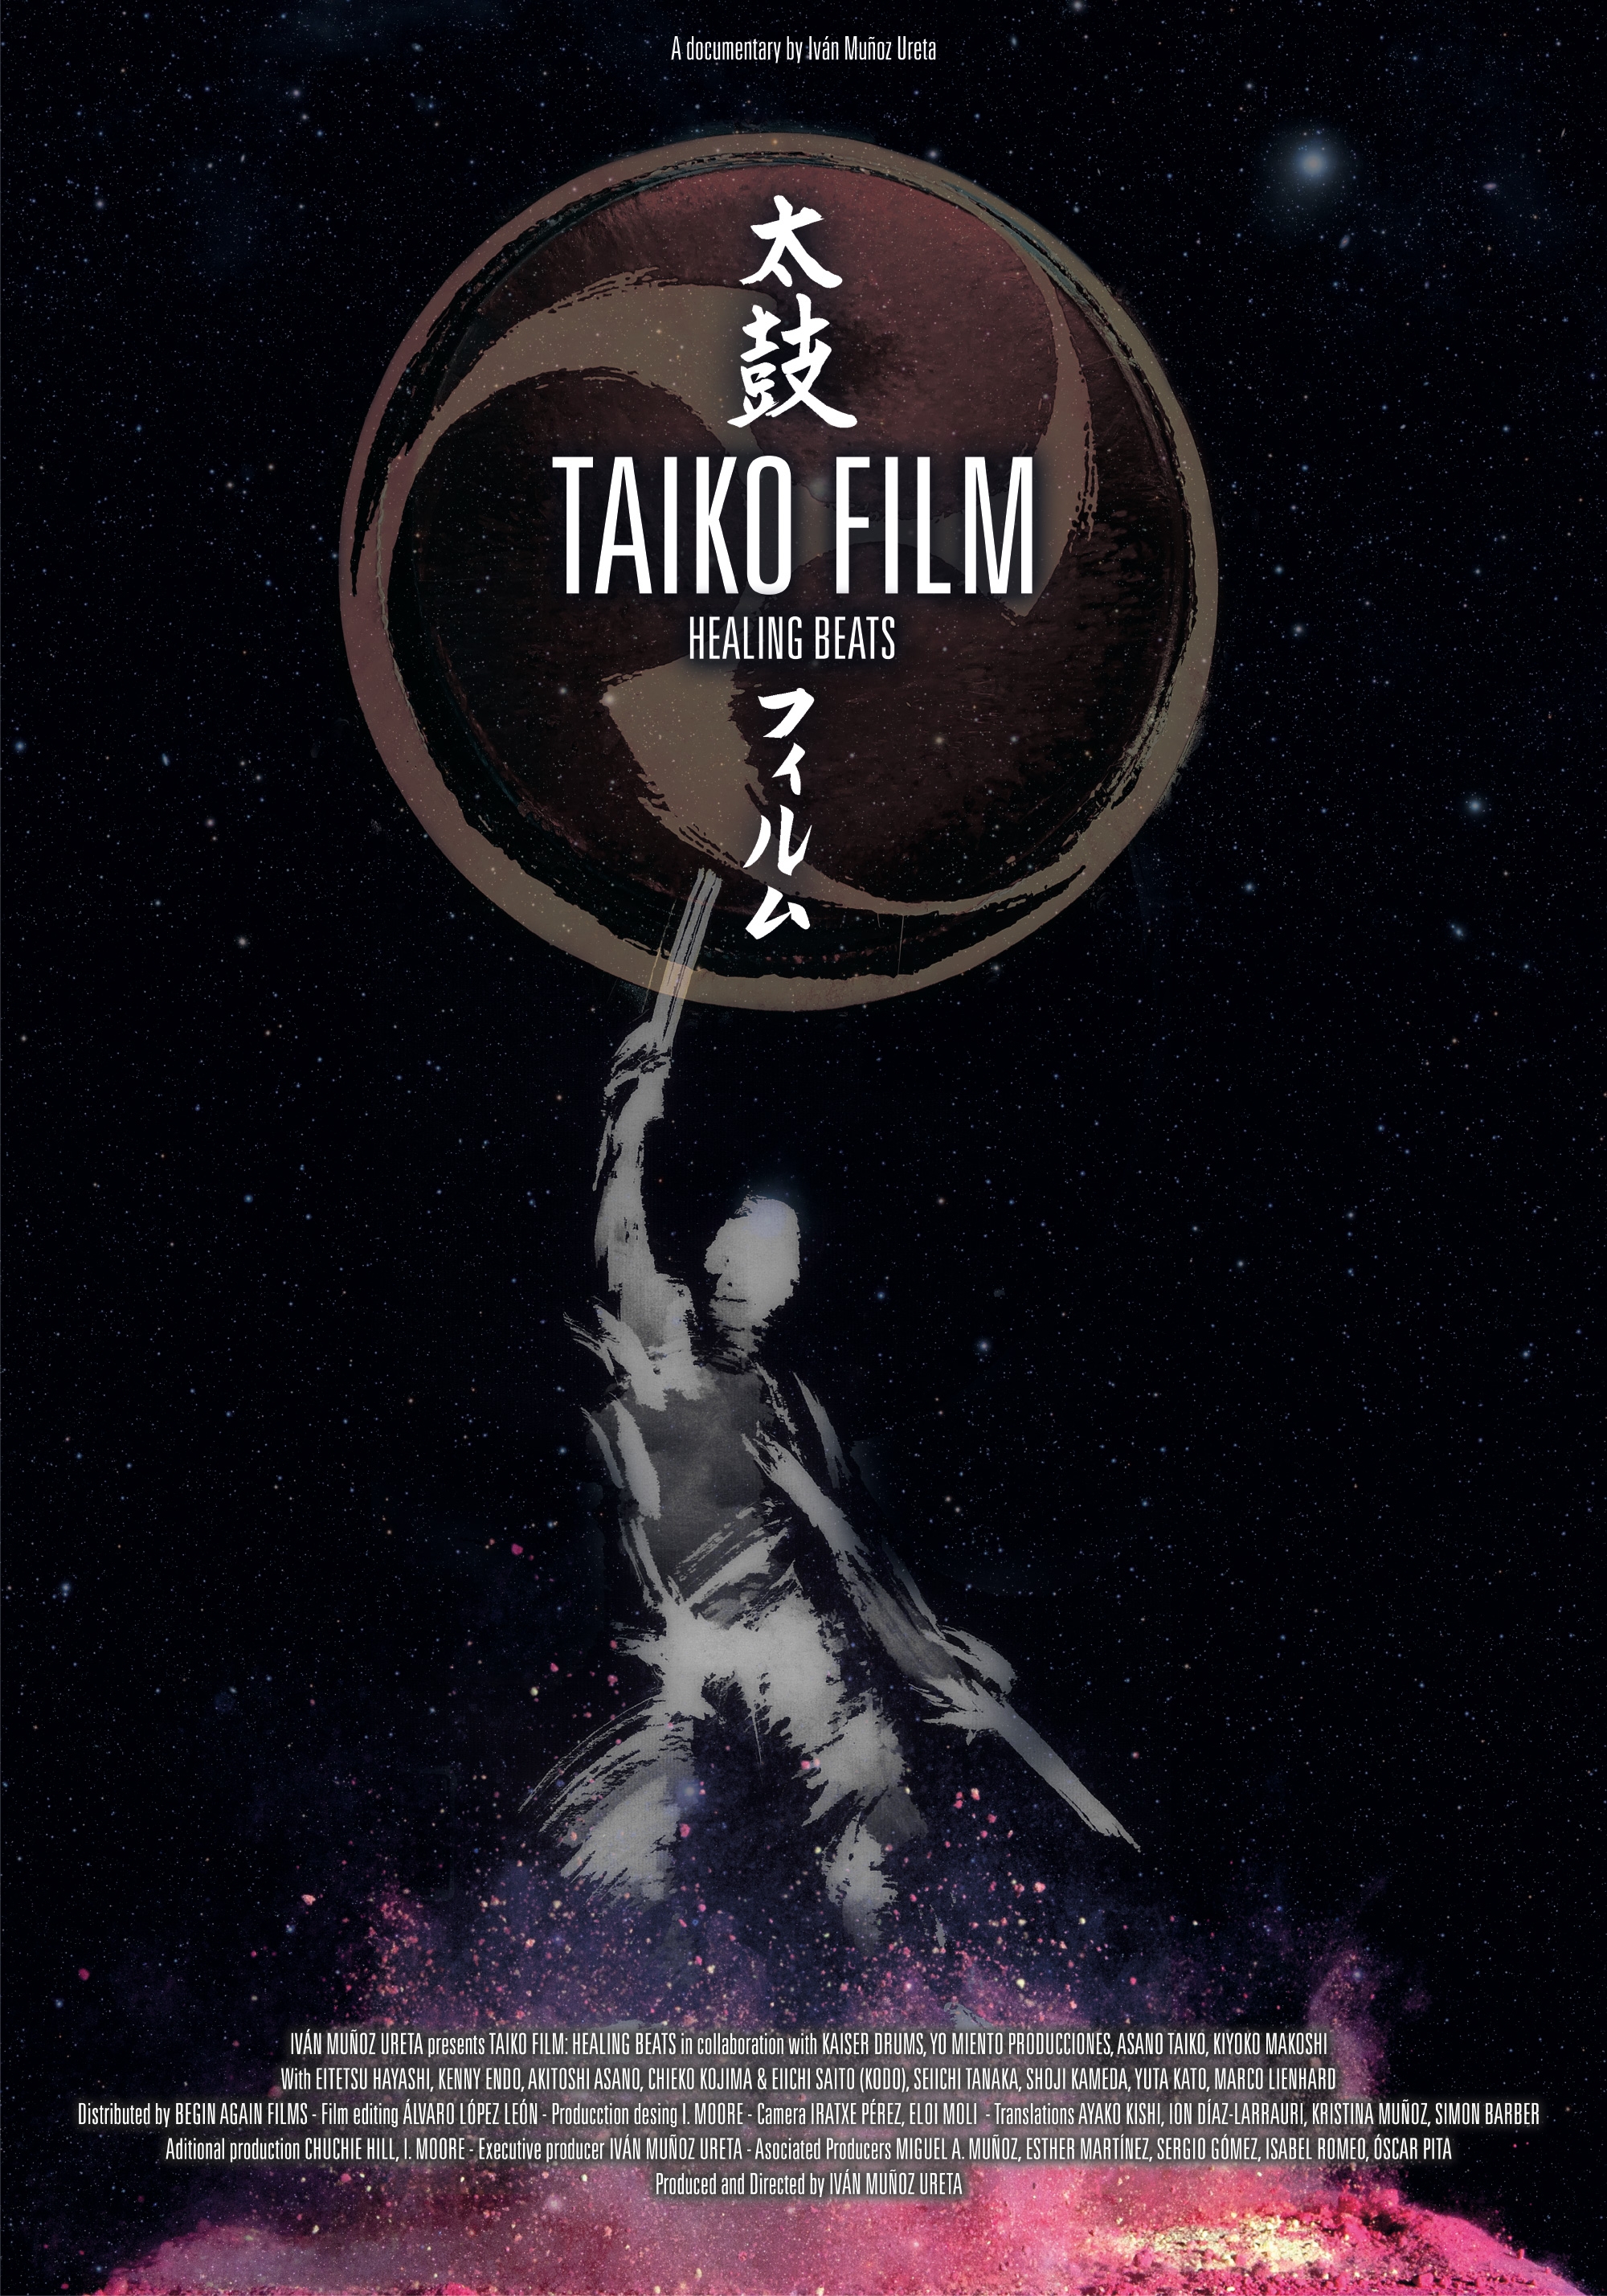 TaikoFilm: Healing Beats (2018)